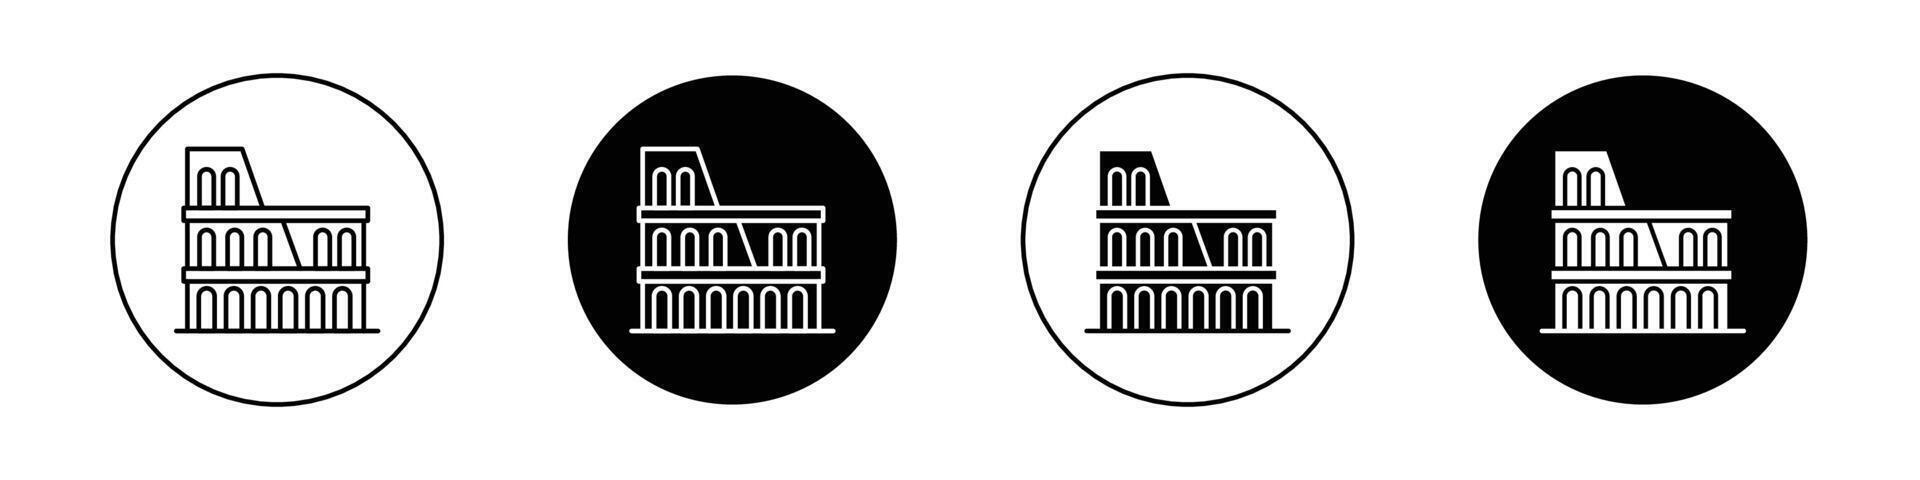 Colosseum vector icon